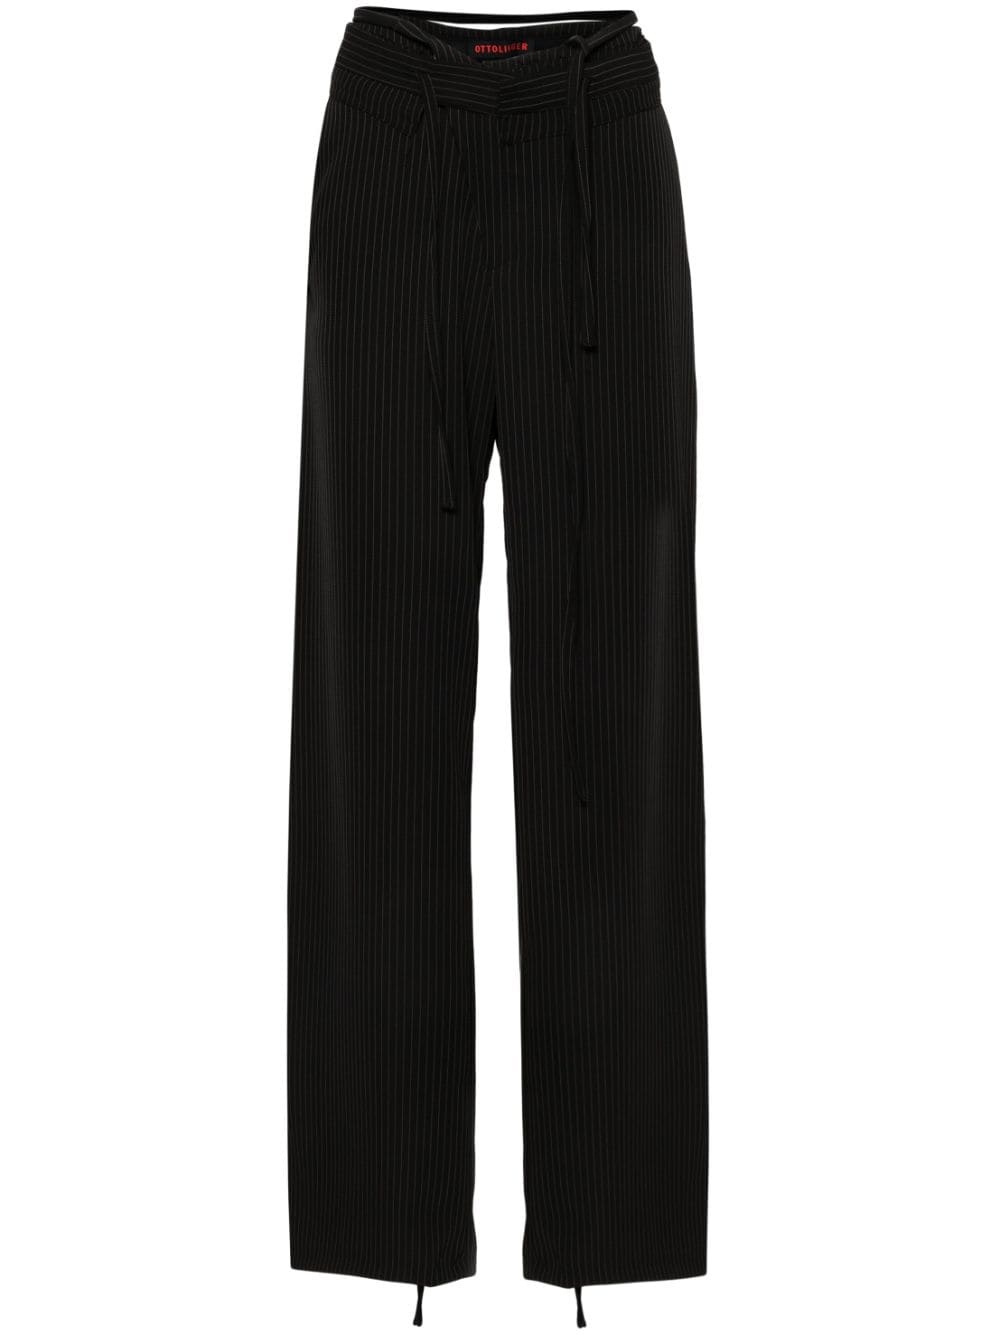 pinstripe-pattern trousers - 1